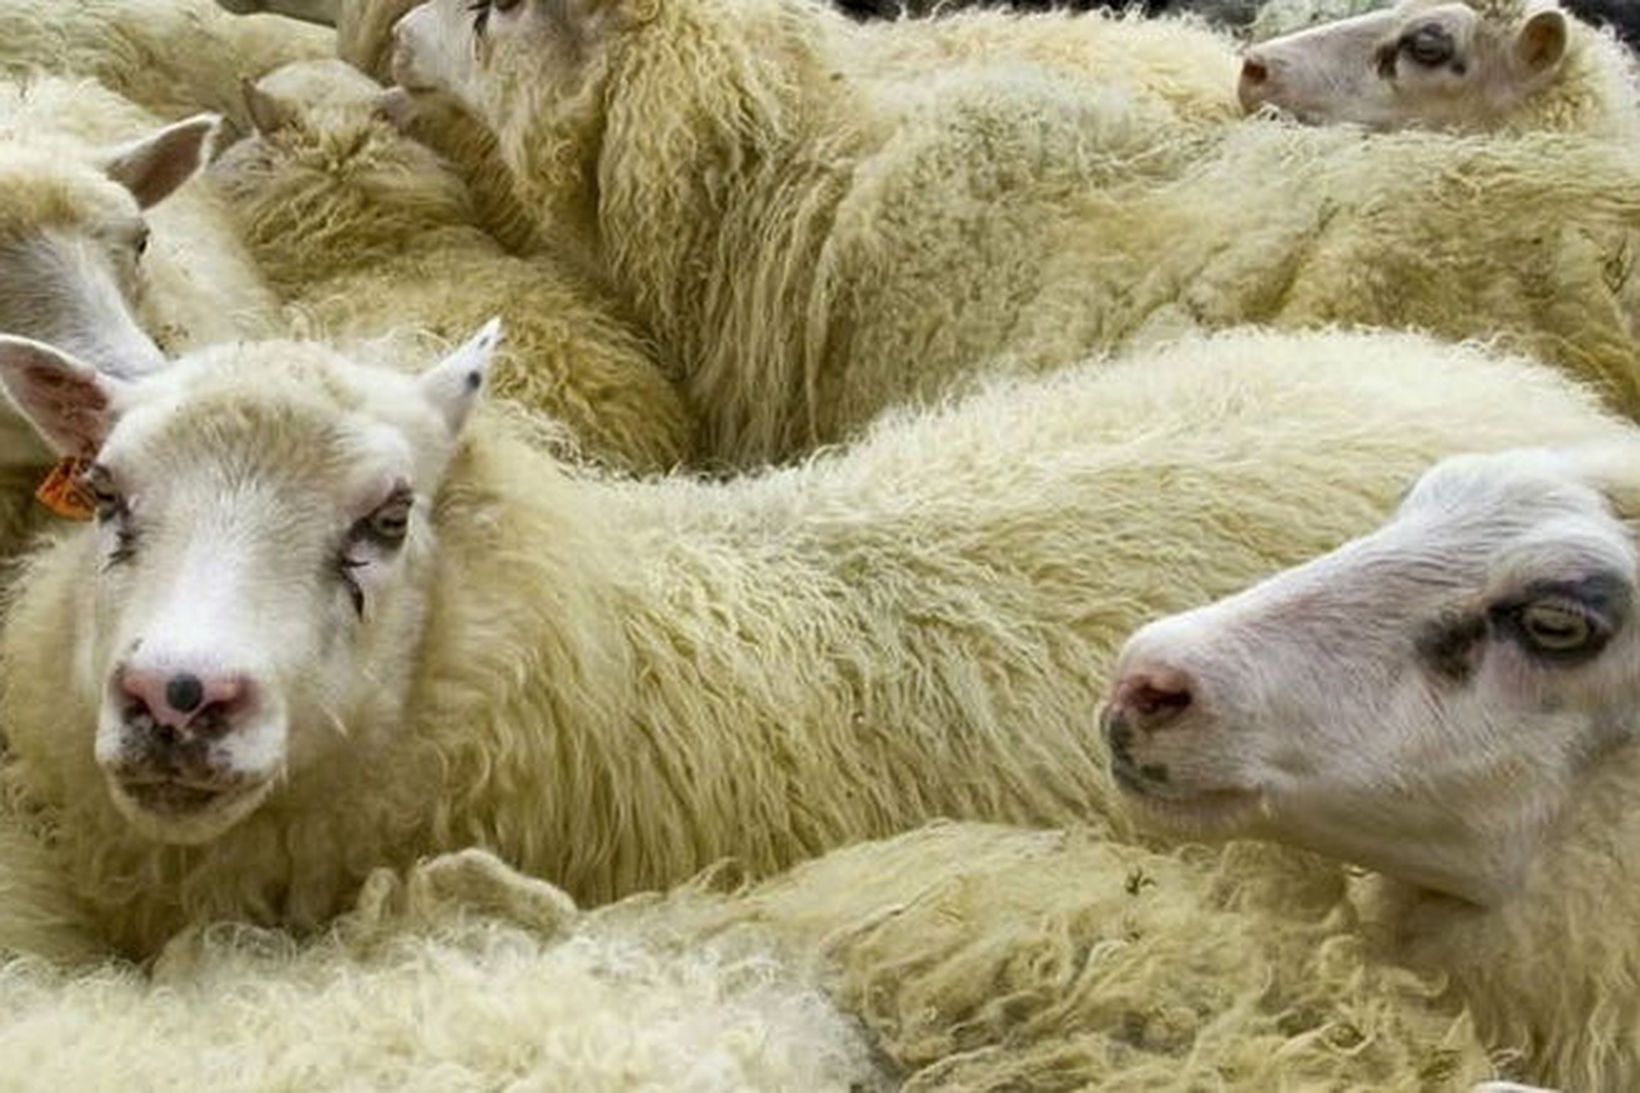 Kína flytur inn 125 þúsund tonn af lambakjöti á ári.